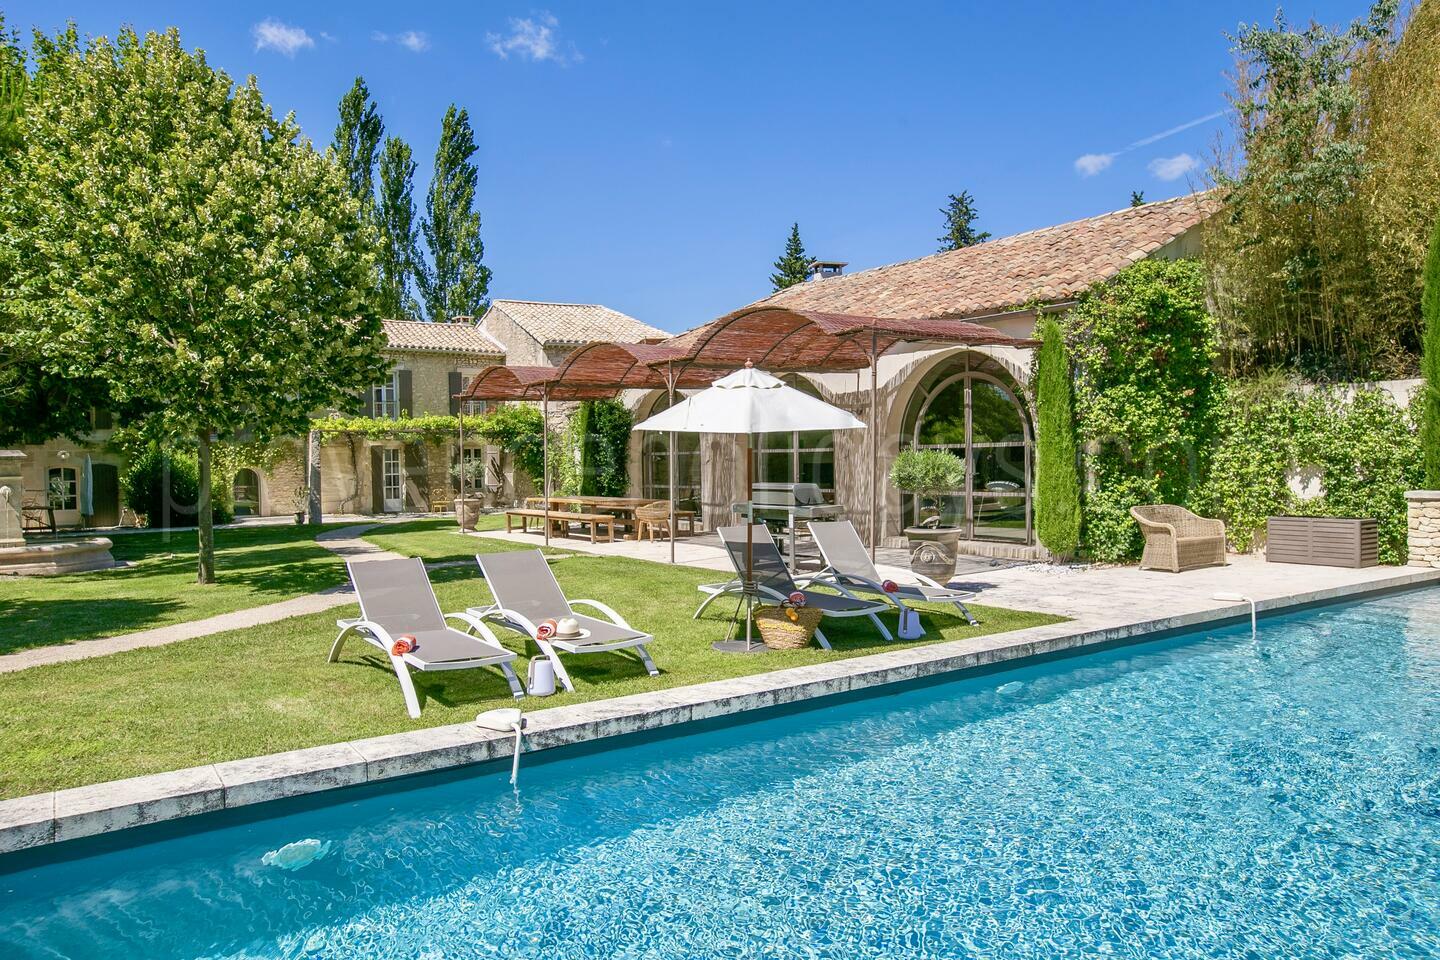 Location de vacances de luxe à Saint-Rémy-de-Provence 1 - Les Oliviers: Villa: Pool